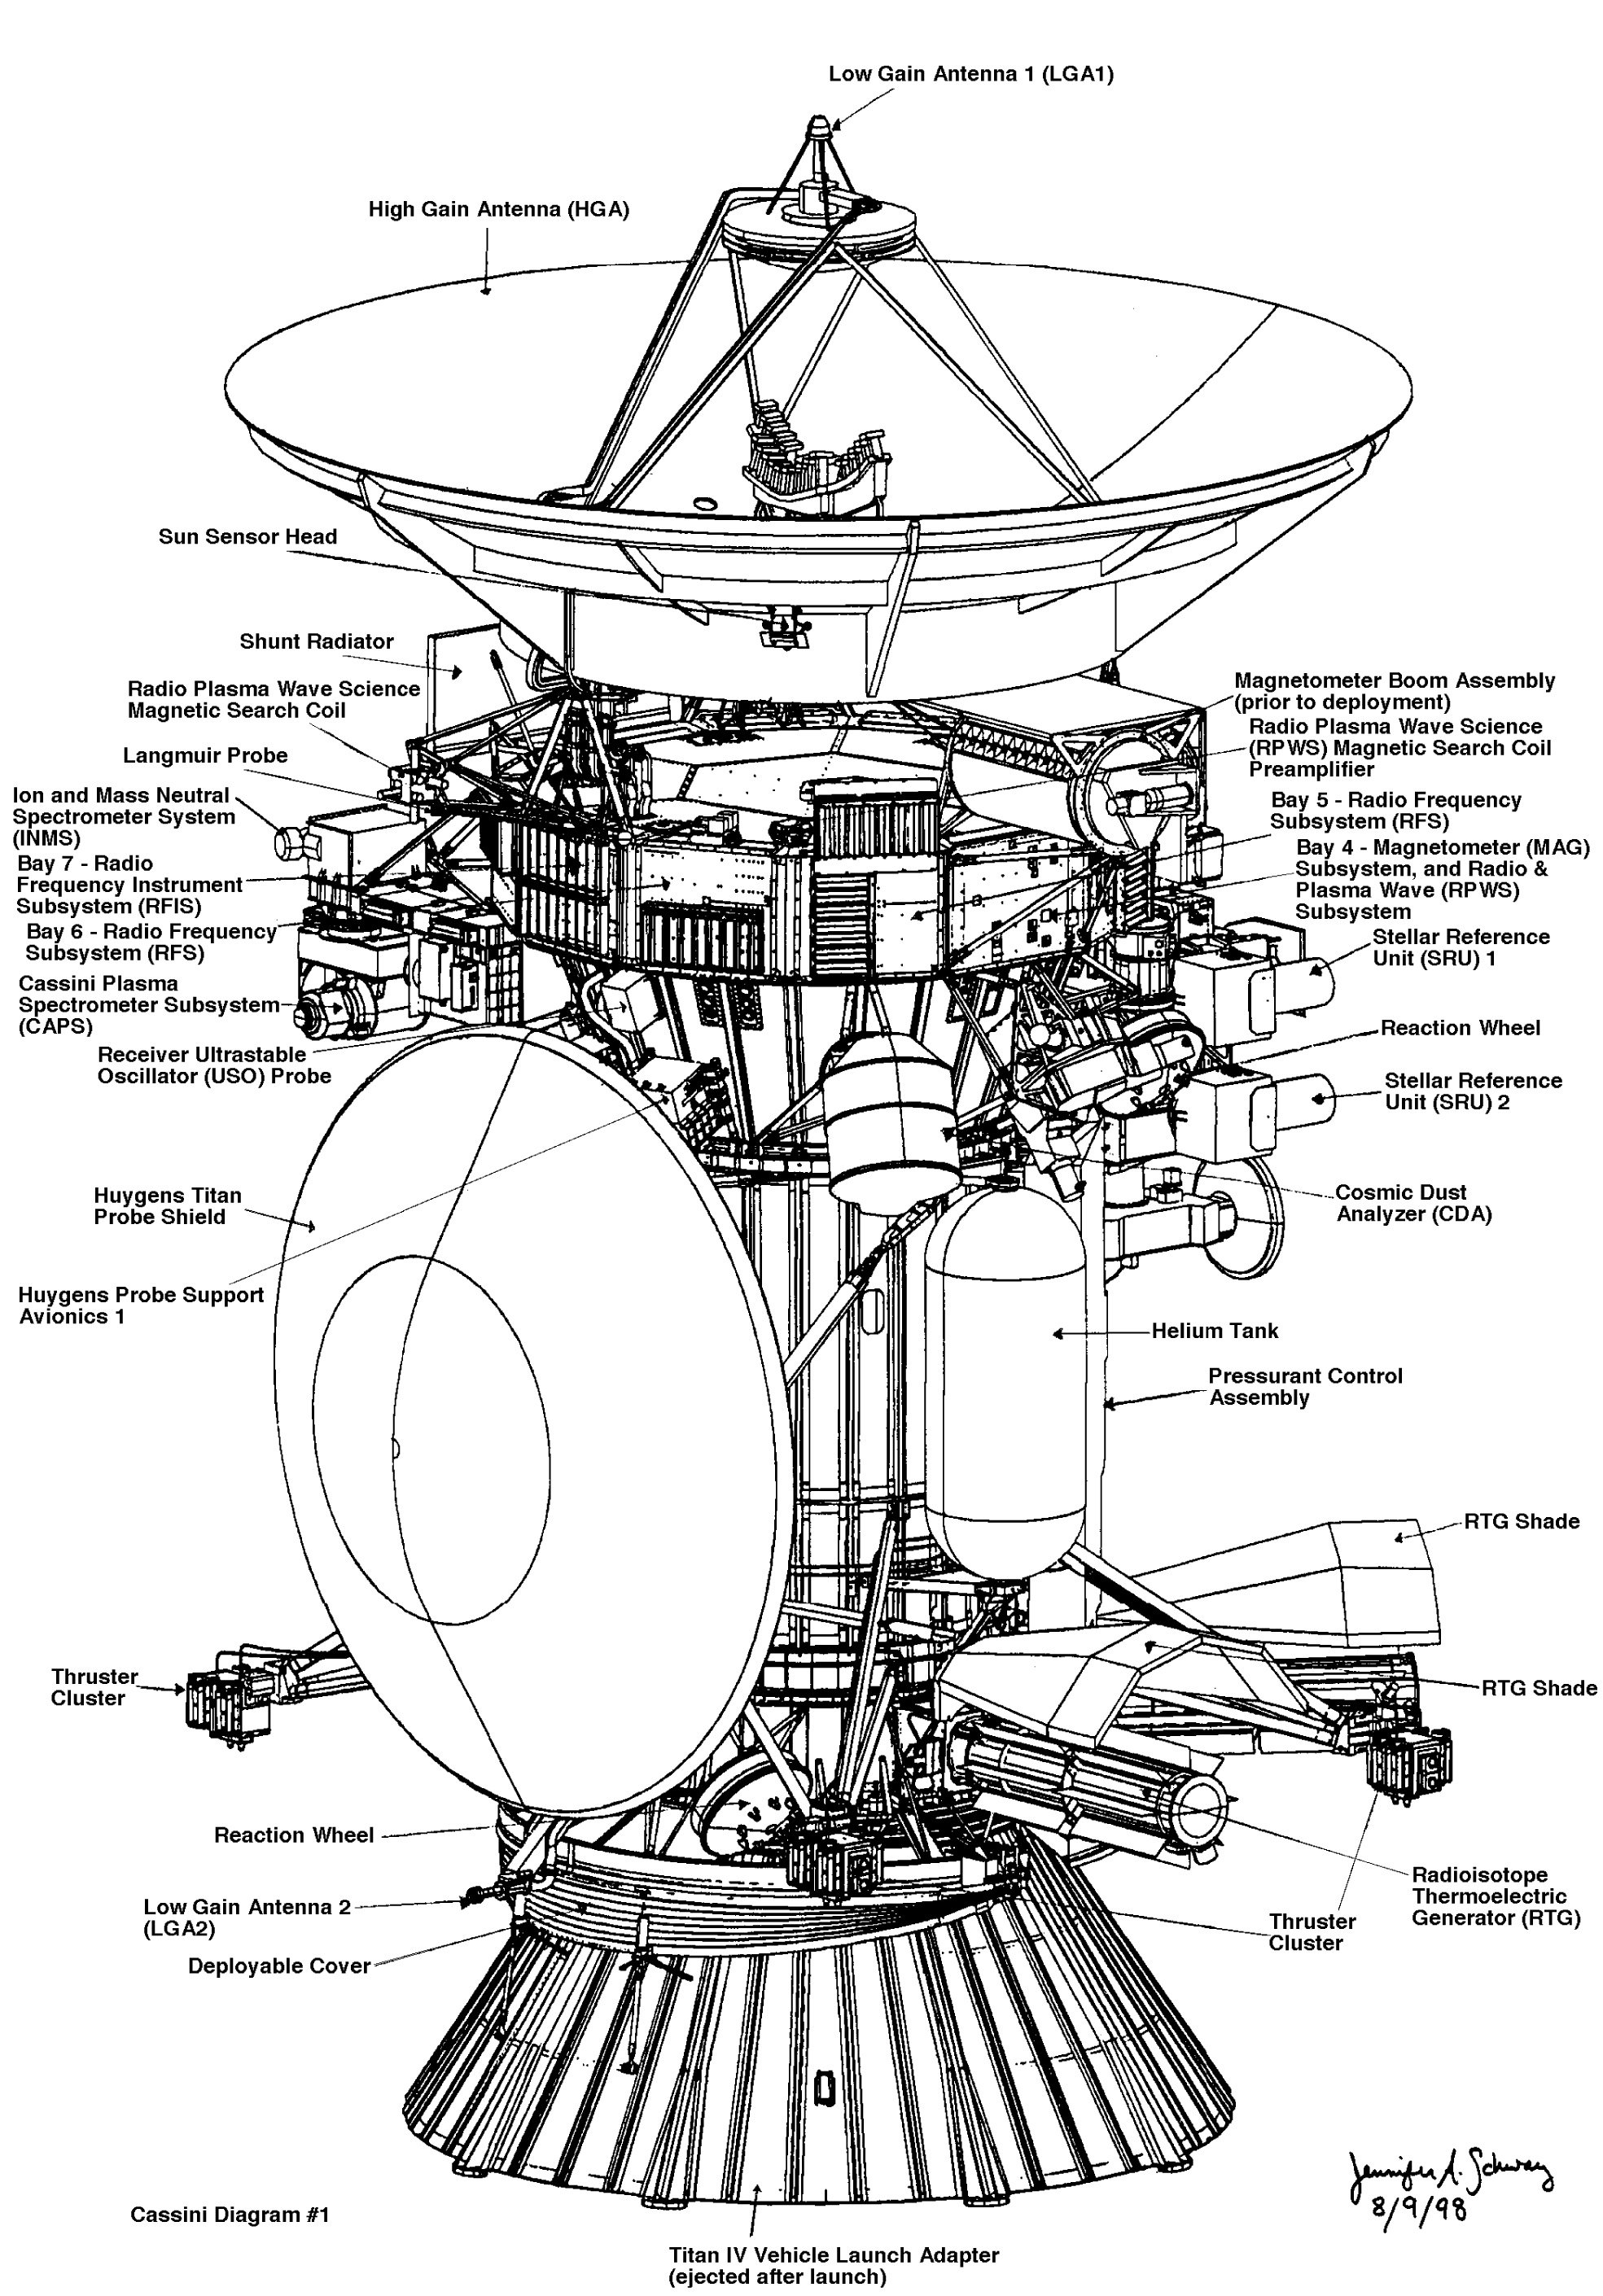 Cassini diagram